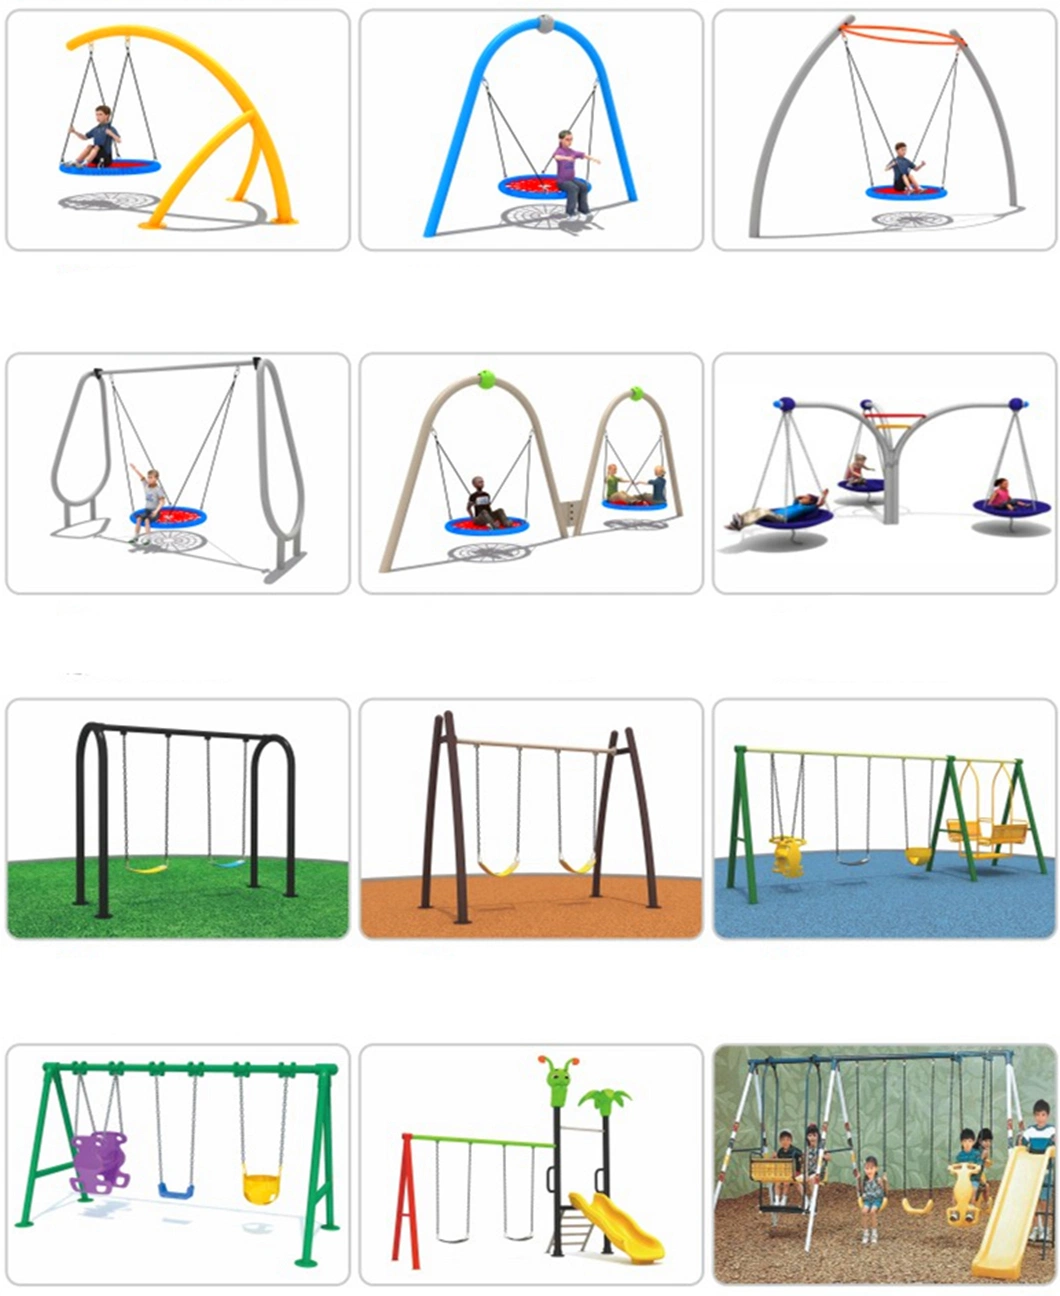 Outdoor Kids Amusement Park Equipment Slide Climbing Frame Swing Set